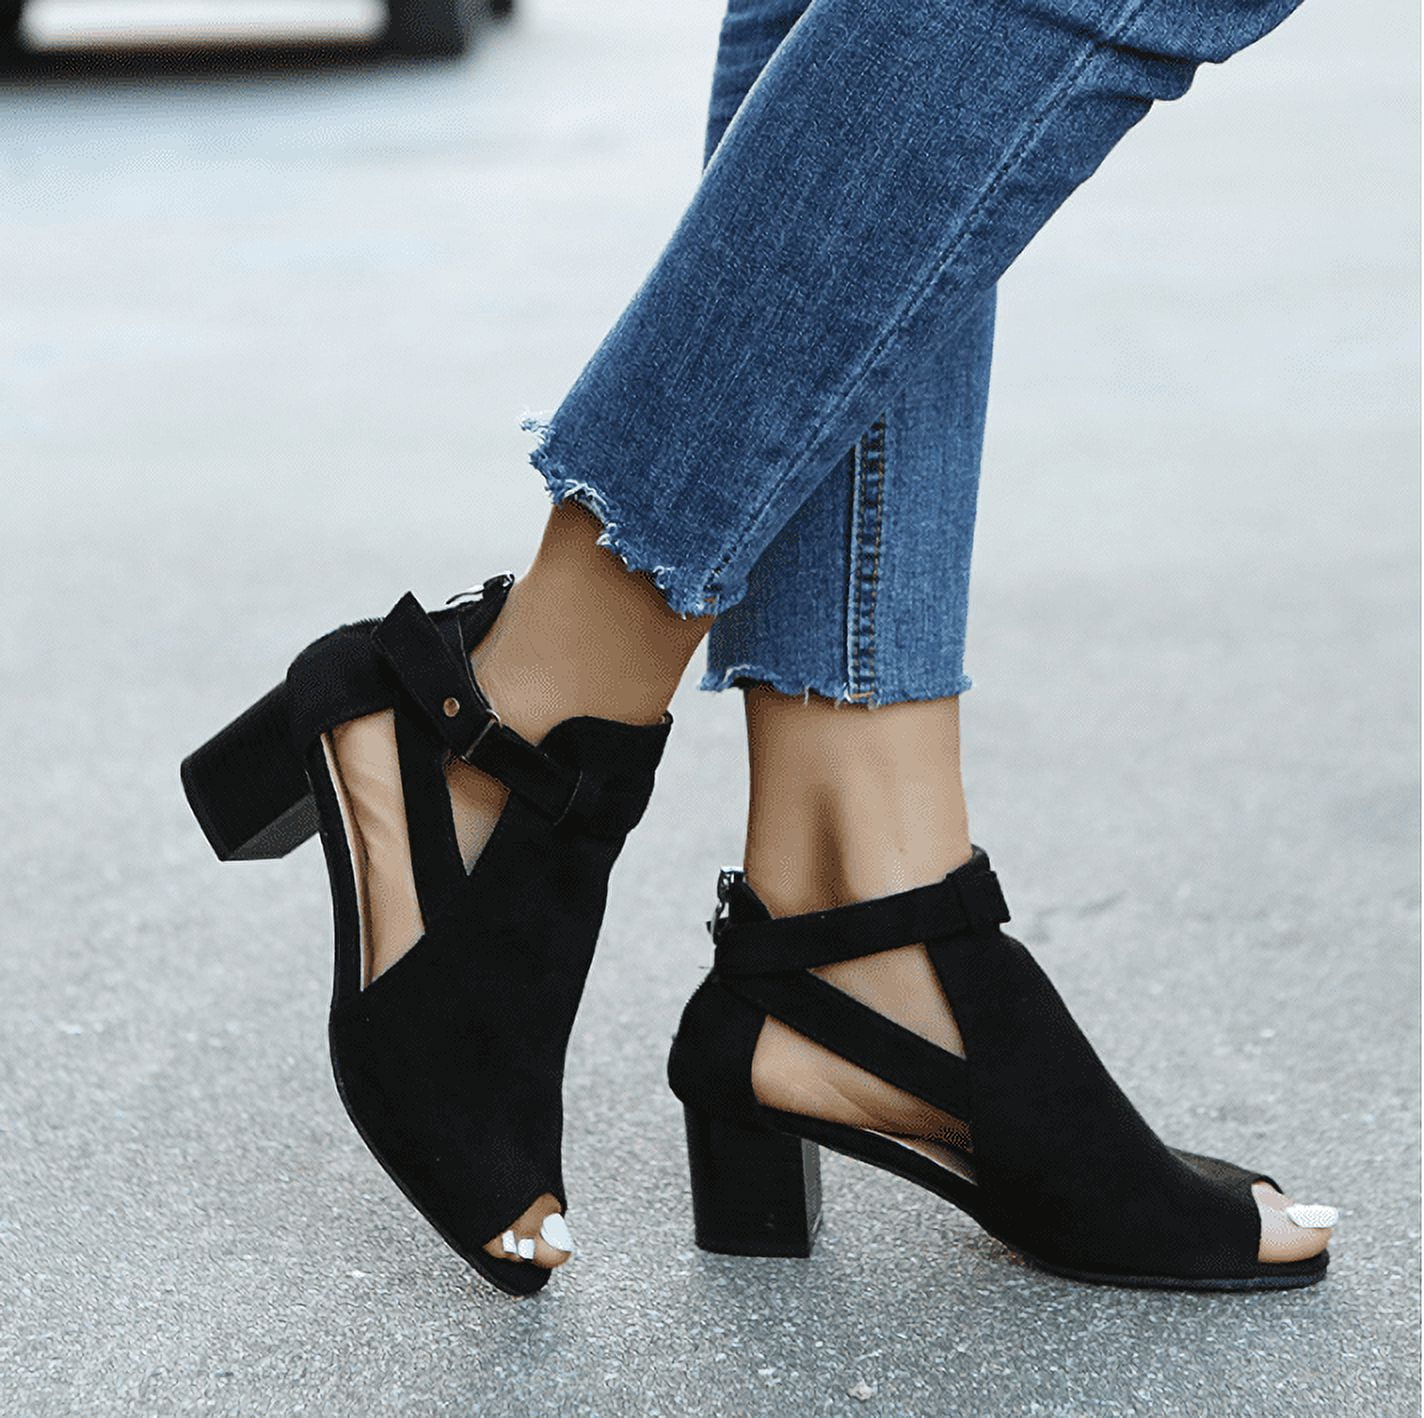 Leather Plain Ladies Black Peep Toe Block Heels at Rs 250/pair in New Delhi  | ID: 27308332373